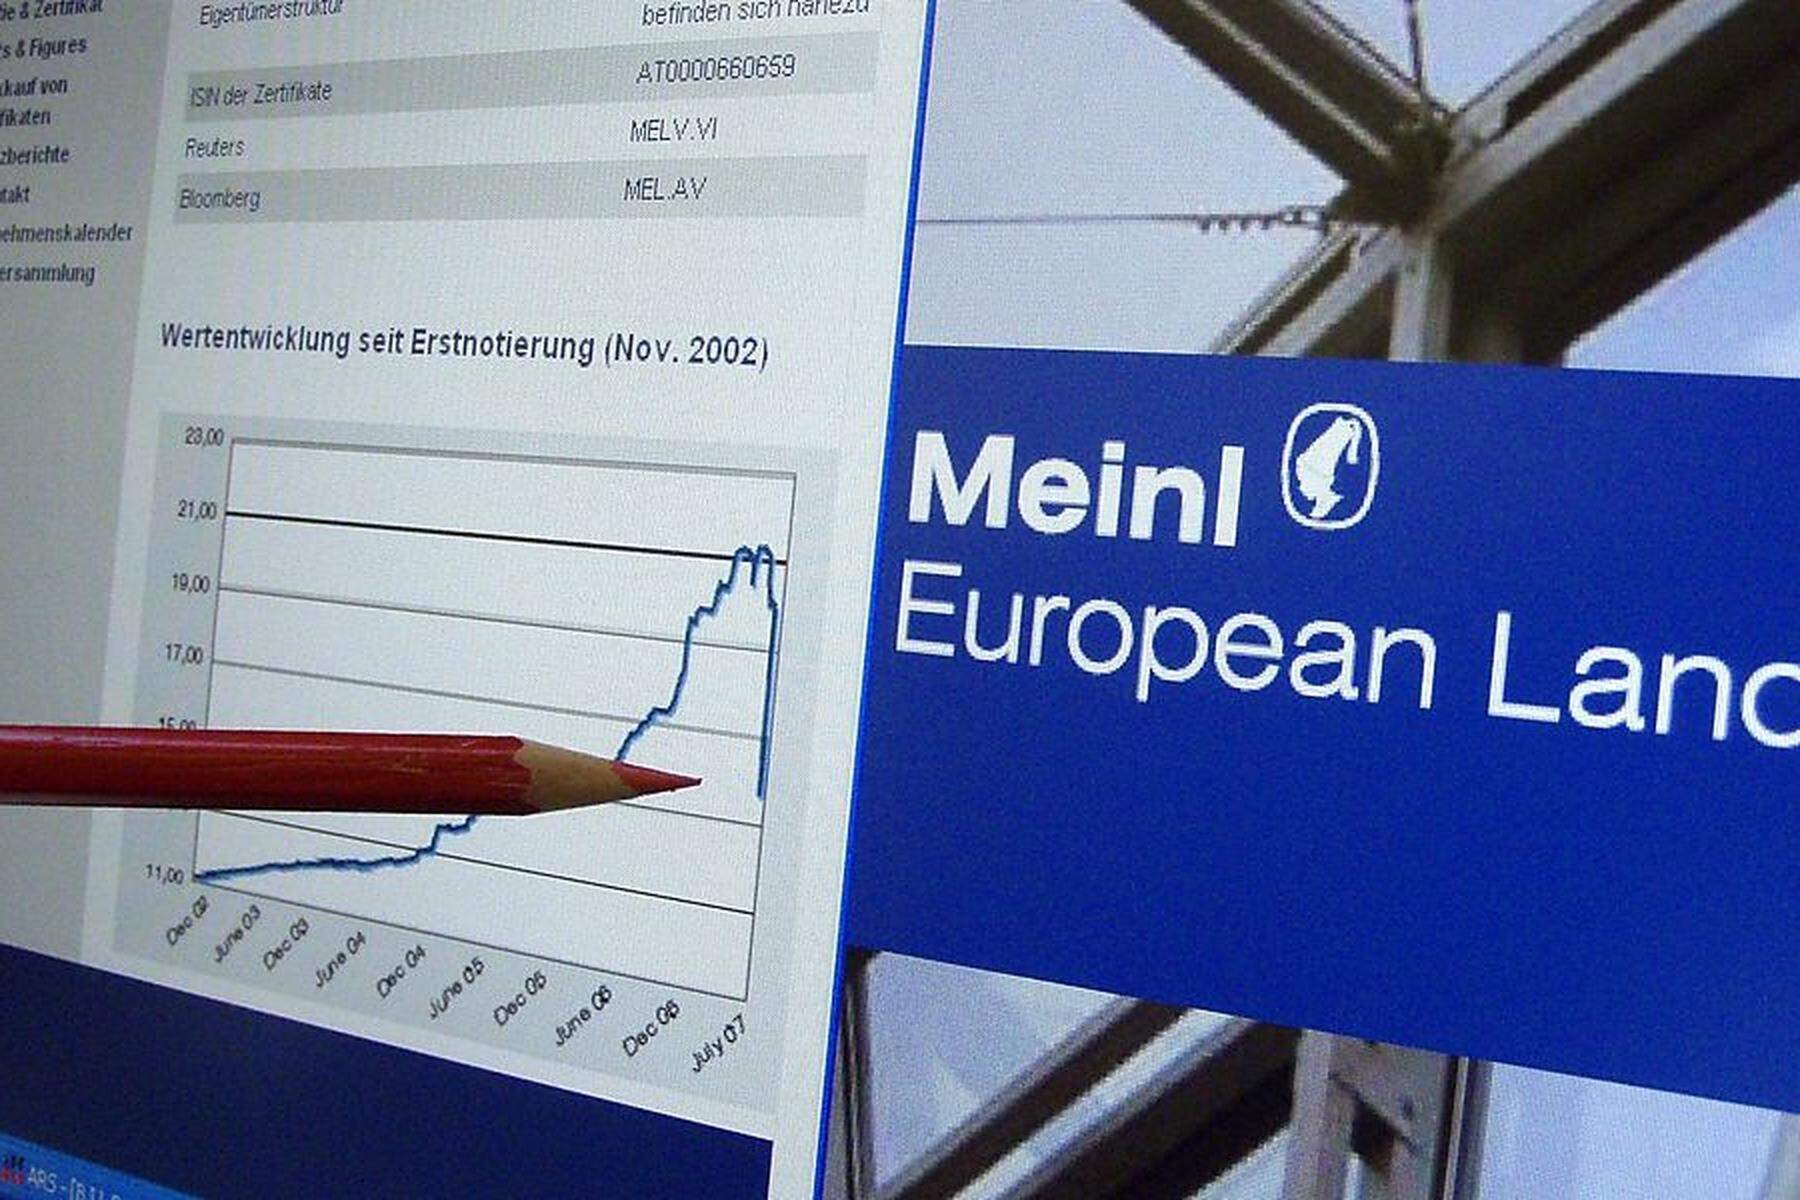 MEL: Ermittlungen rund um Meinl European Land eingestellt